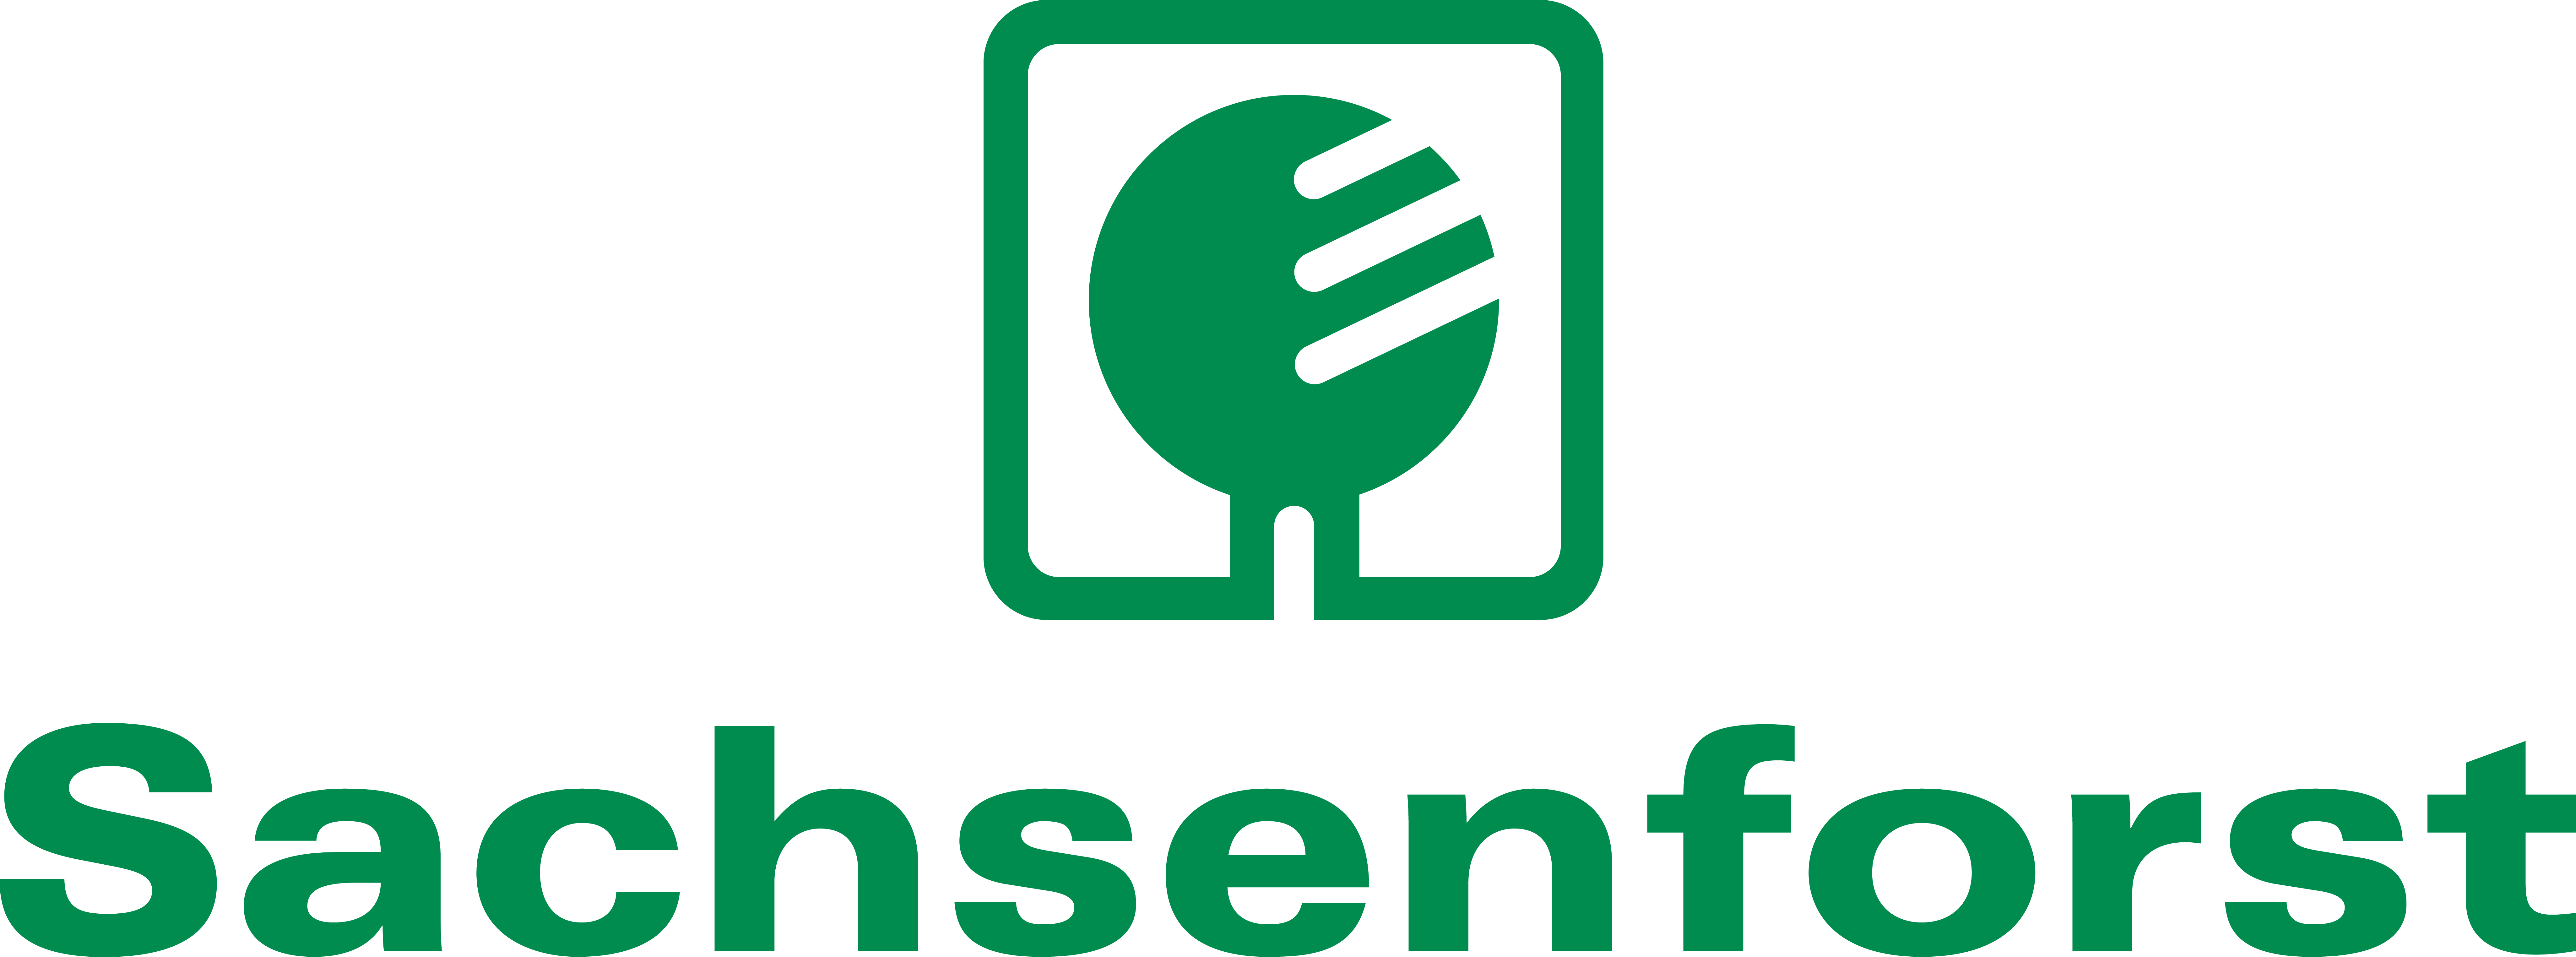 Logo Staatsbetrieb Sachsenforst